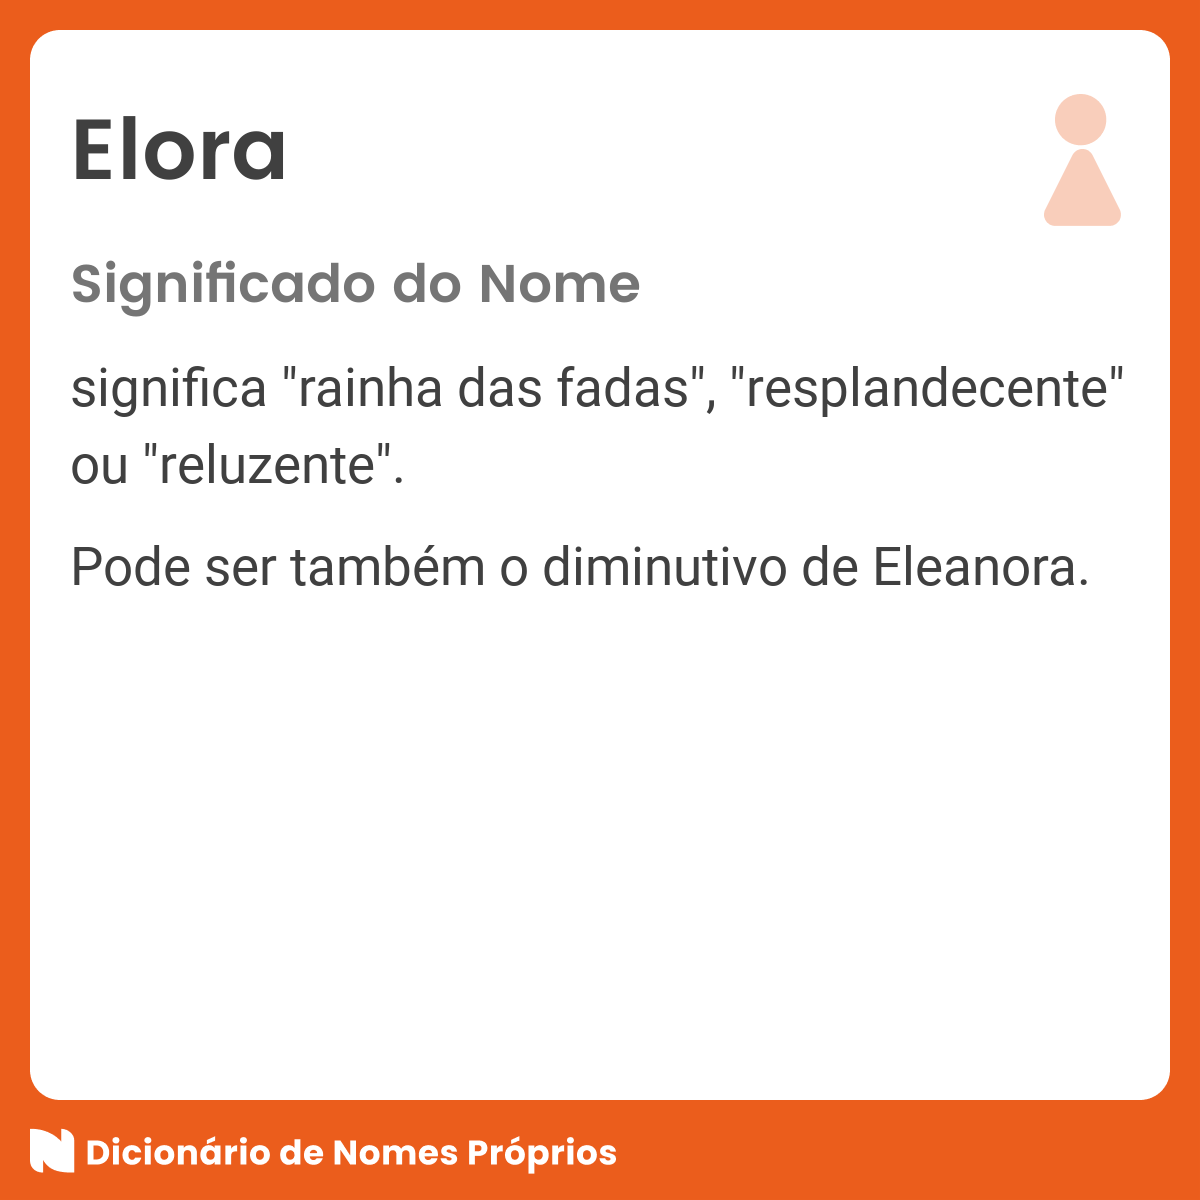 Significado do nome Eloa - O que seu nome significa?